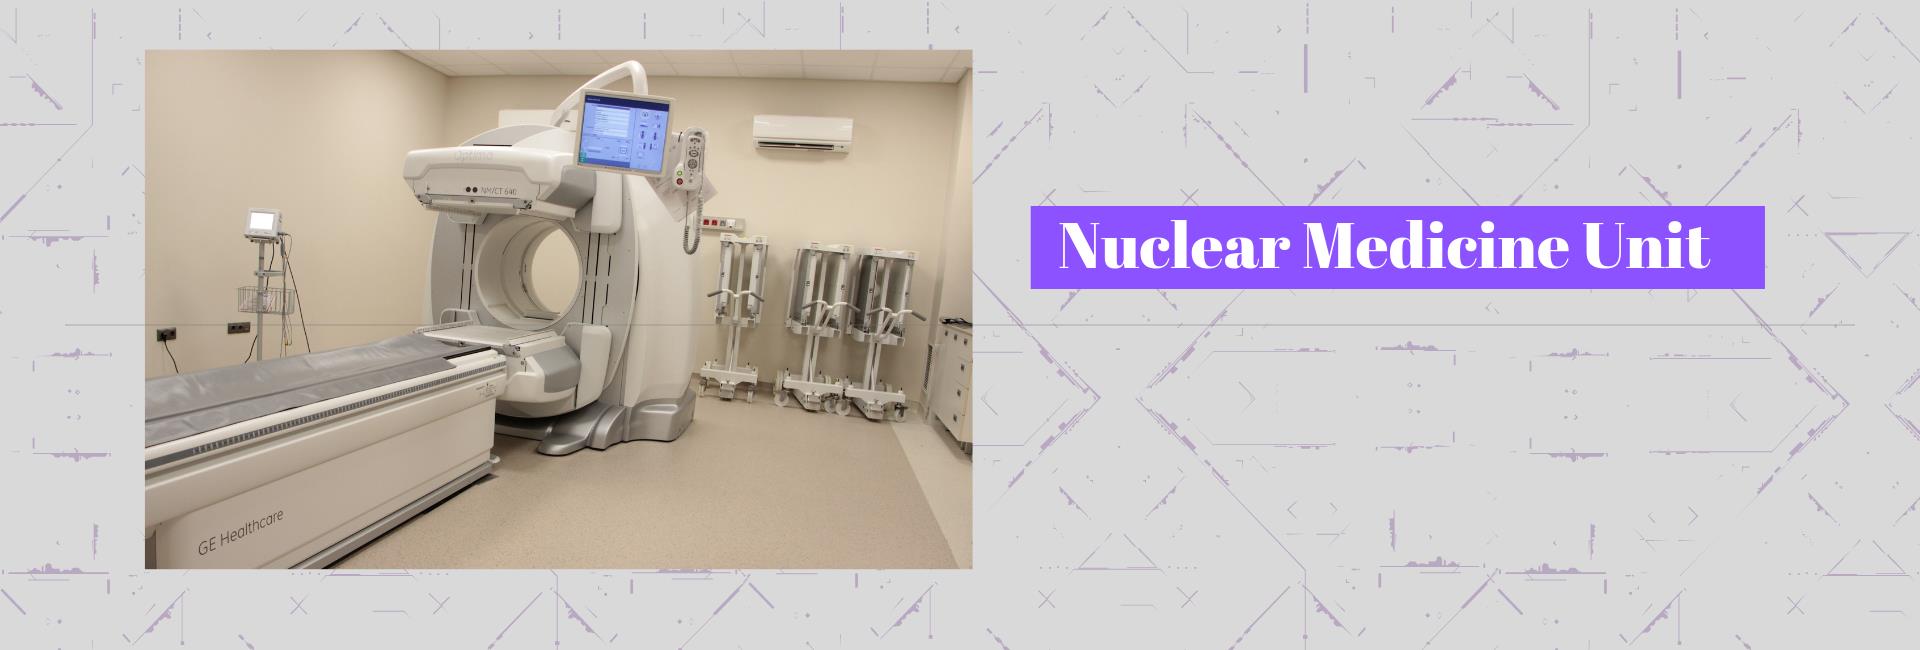 Nuclear Medicine Unit